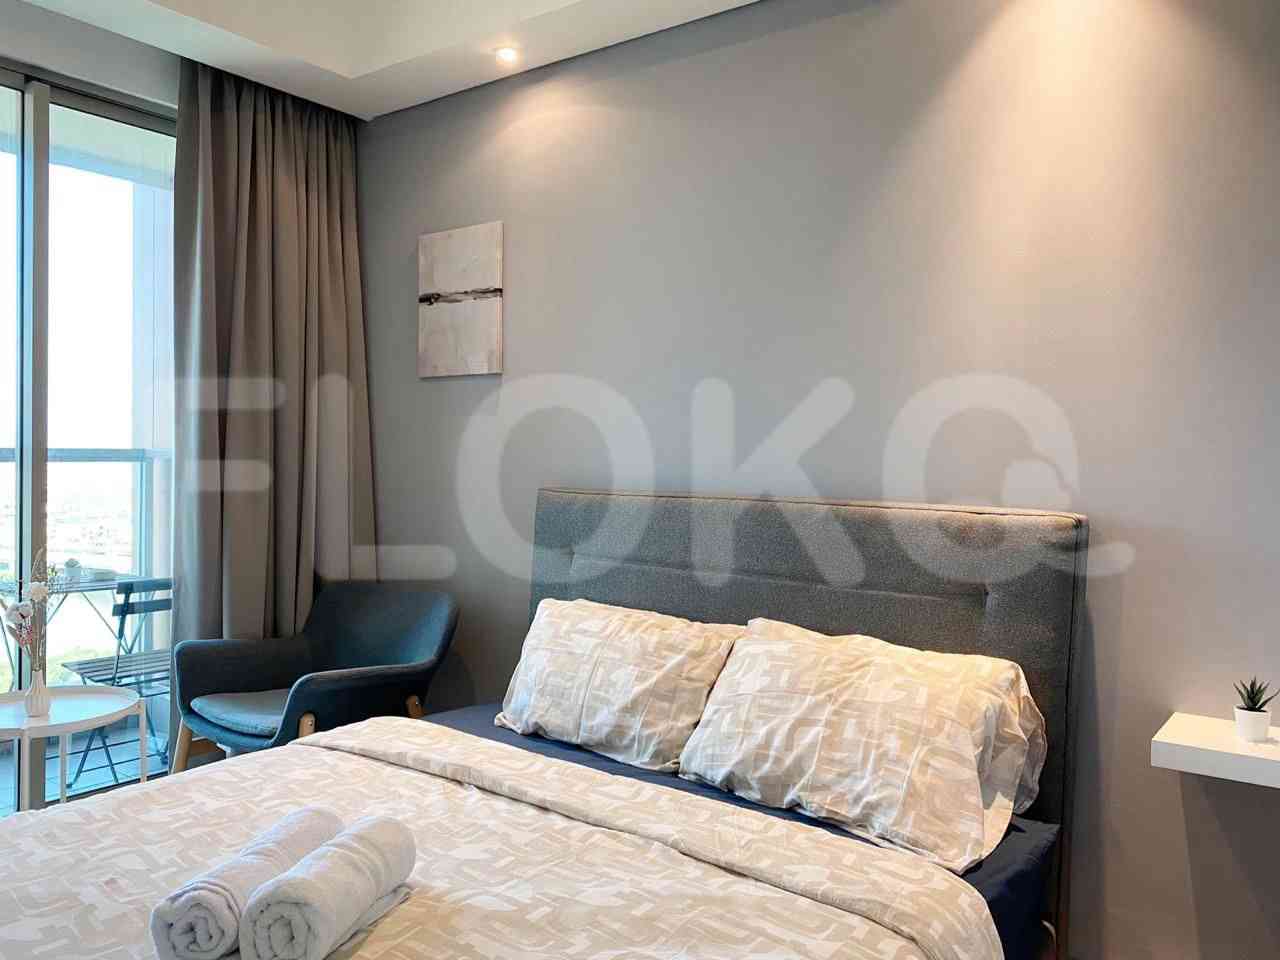 Tipe 1 Kamar Tidur di Lantai 15 untuk disewakan di Gold Coast Apartemen - fka267 2